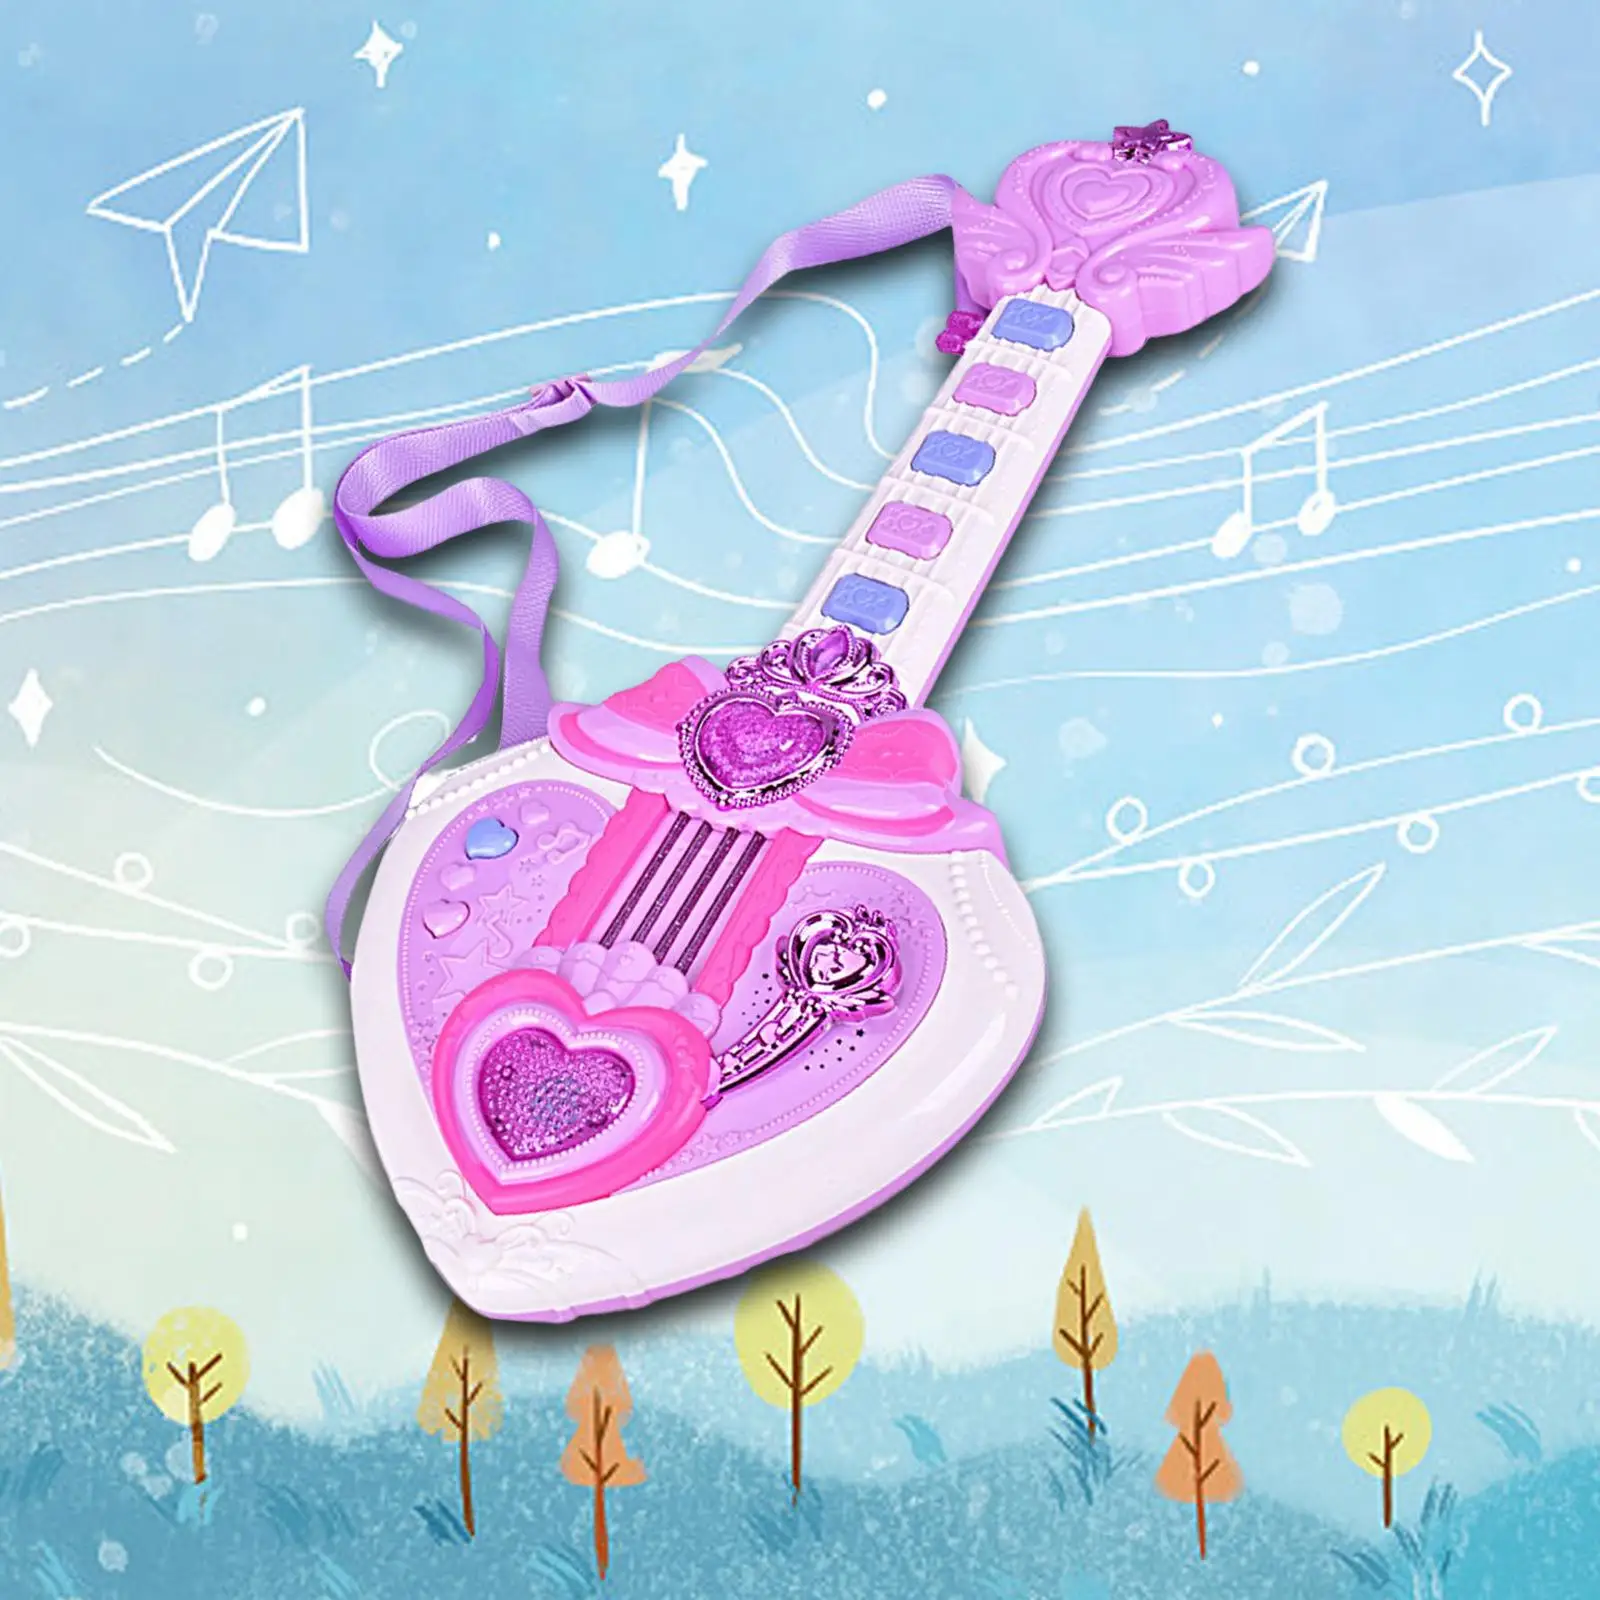 Music Toys Handheld Portable Musical for Children Toddler